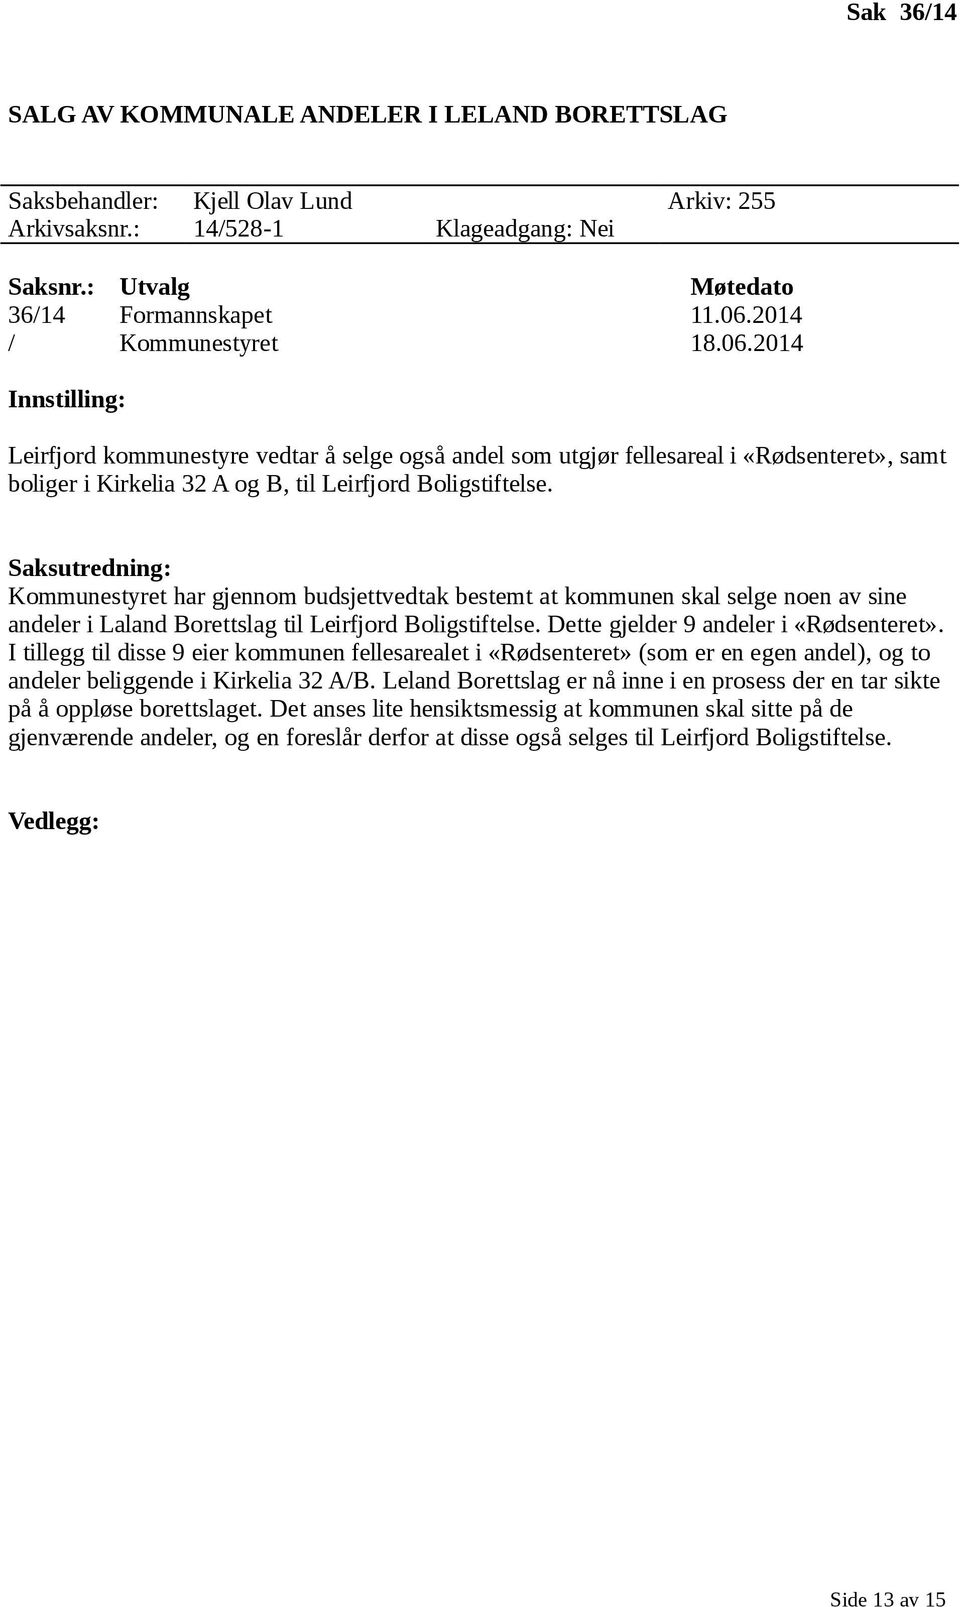 Kommunestyret har gjennom budsjettvedtak bestemt at kommunen skal selge noen av sine andeler i Laland Borettslag til Leirfjord Boligstiftelse. Dette gjelder 9 andeler i «Rødsenteret».